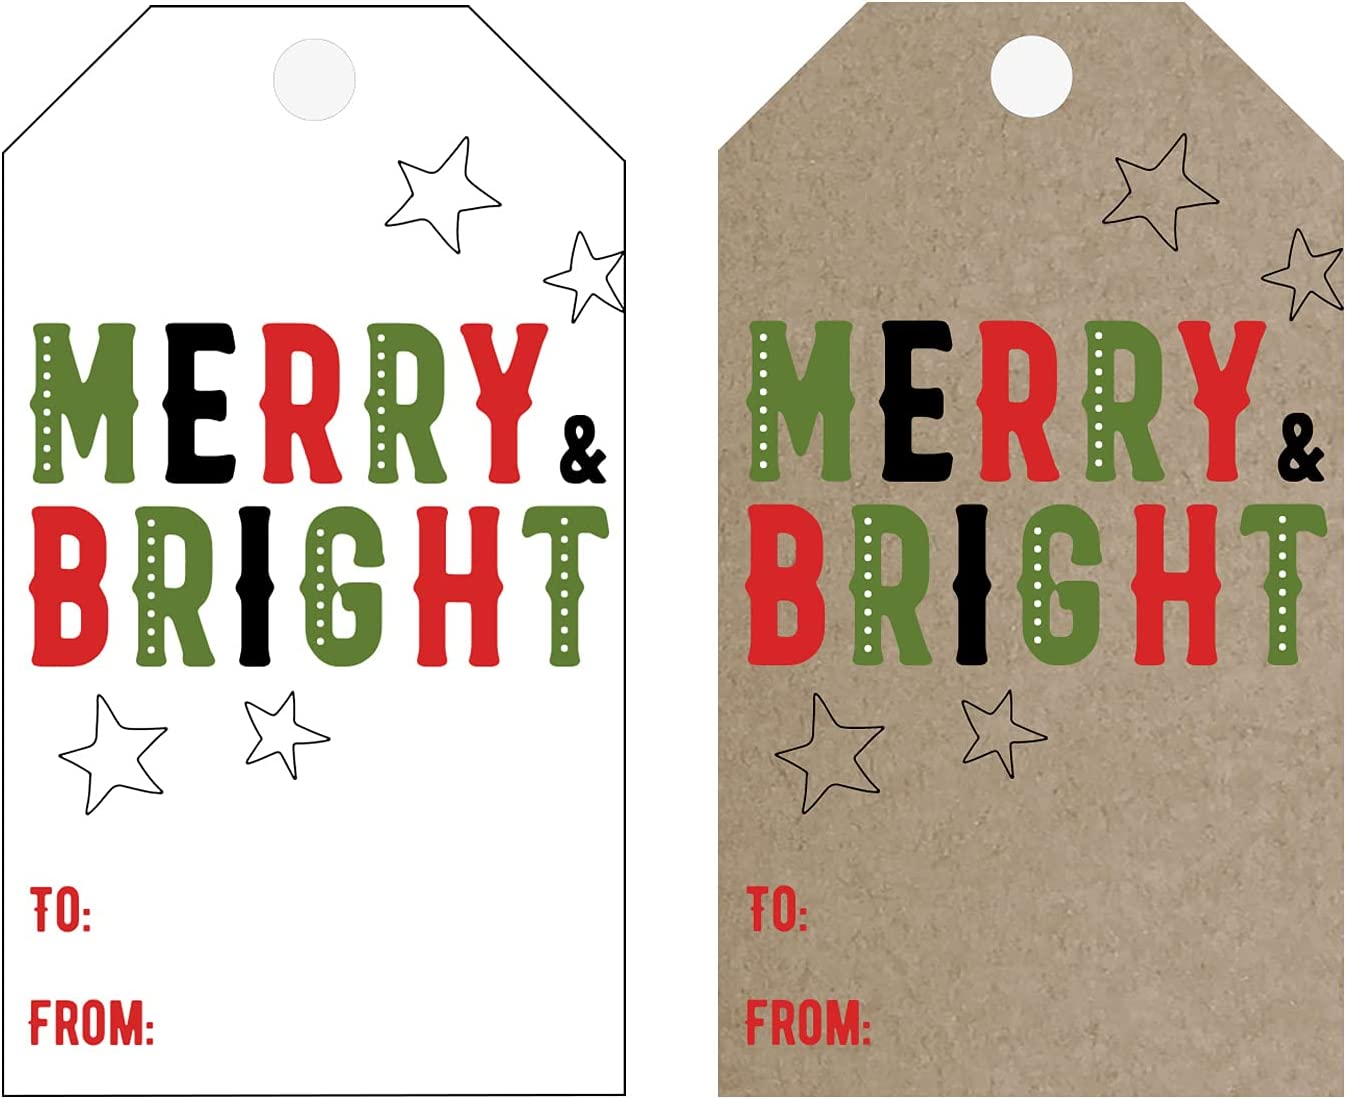 Christmas Holiday Gift Tag- Printable Christmas Gift Tags